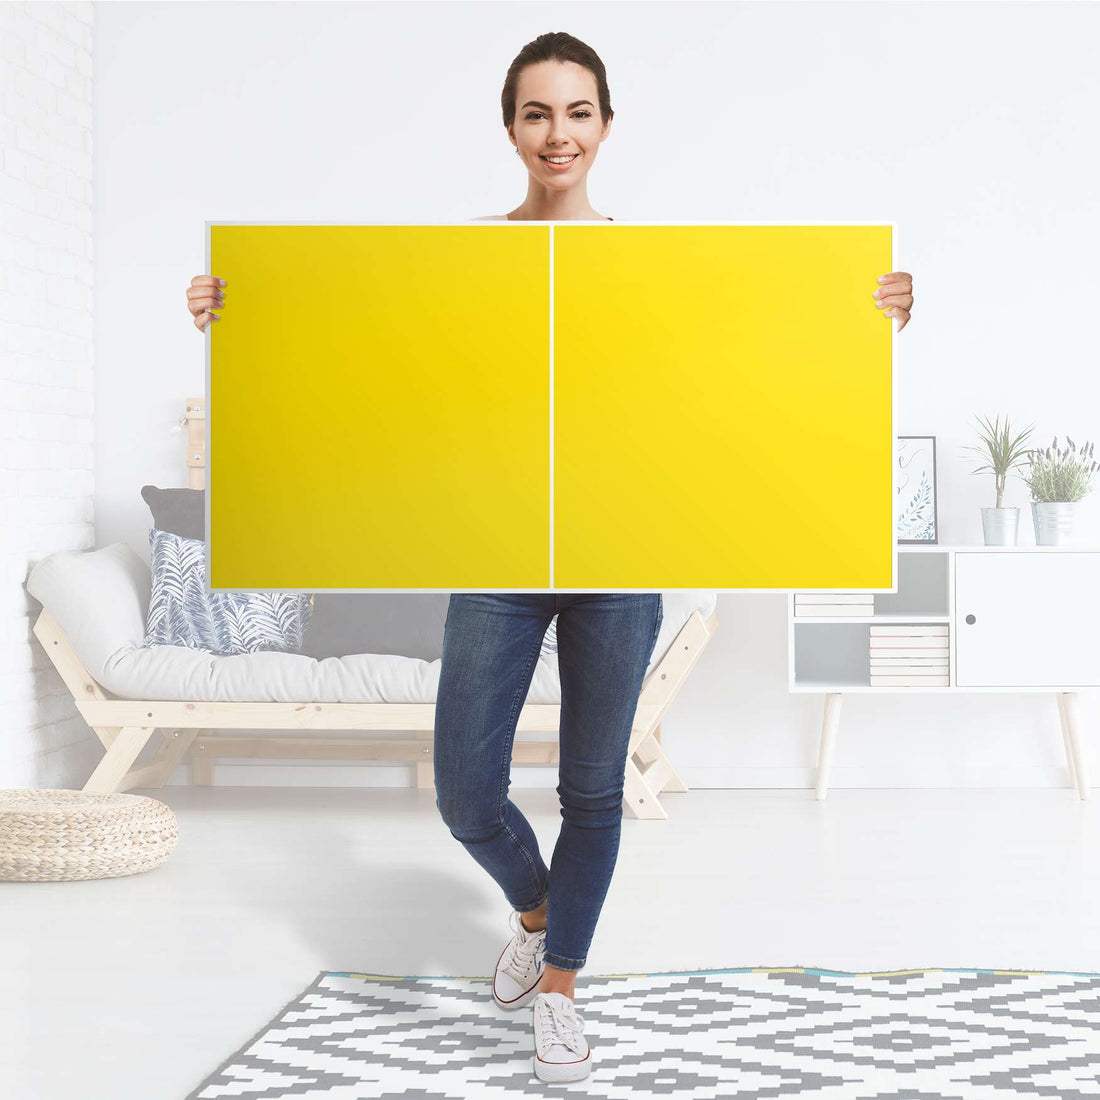 Folie für Möbel Gelb Dark - IKEA Besta Regal Quer 2 Türen - Folie